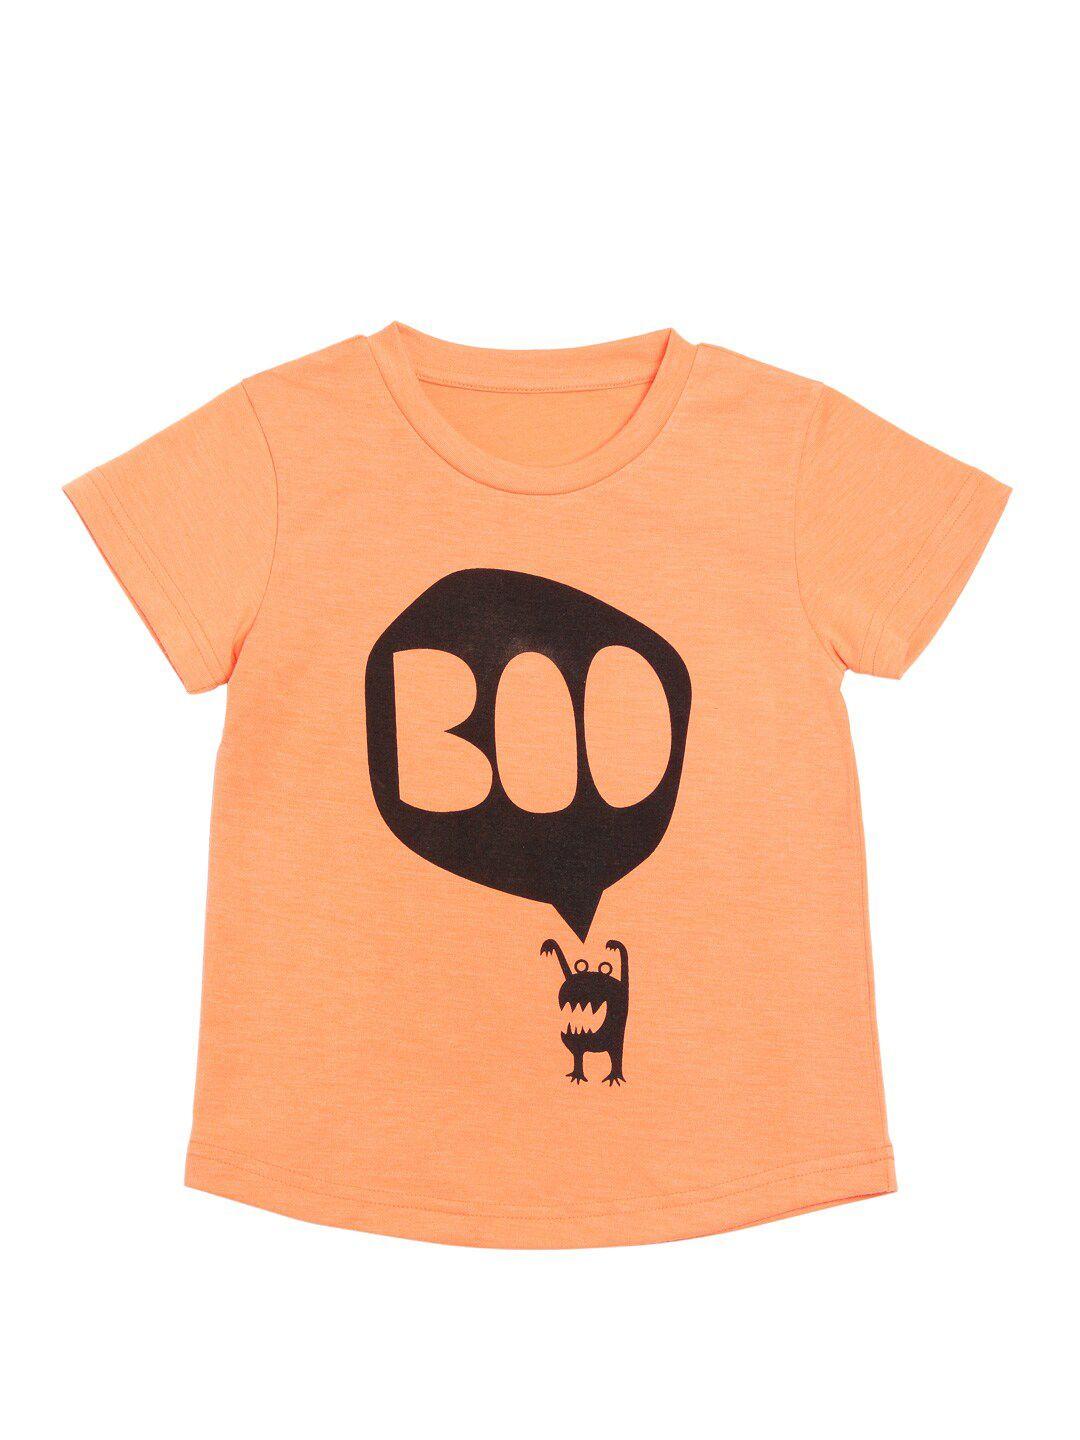 door74-kids-graphic-printed-cotton-t-shirt